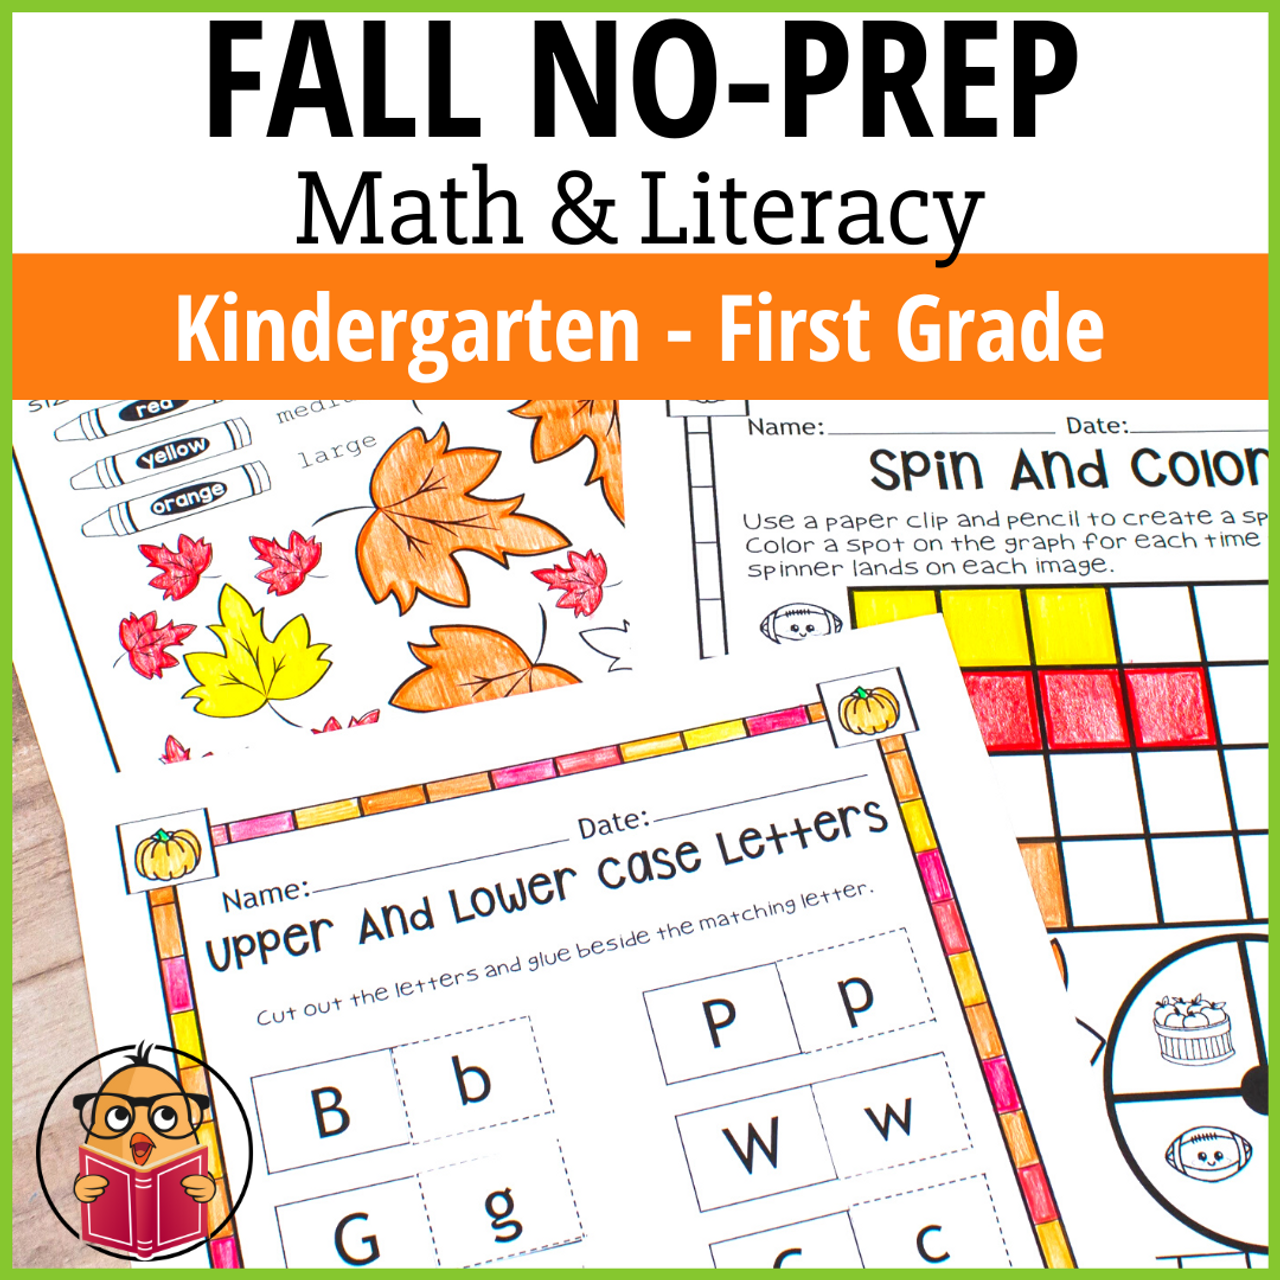 Fall no-prep math & literacy